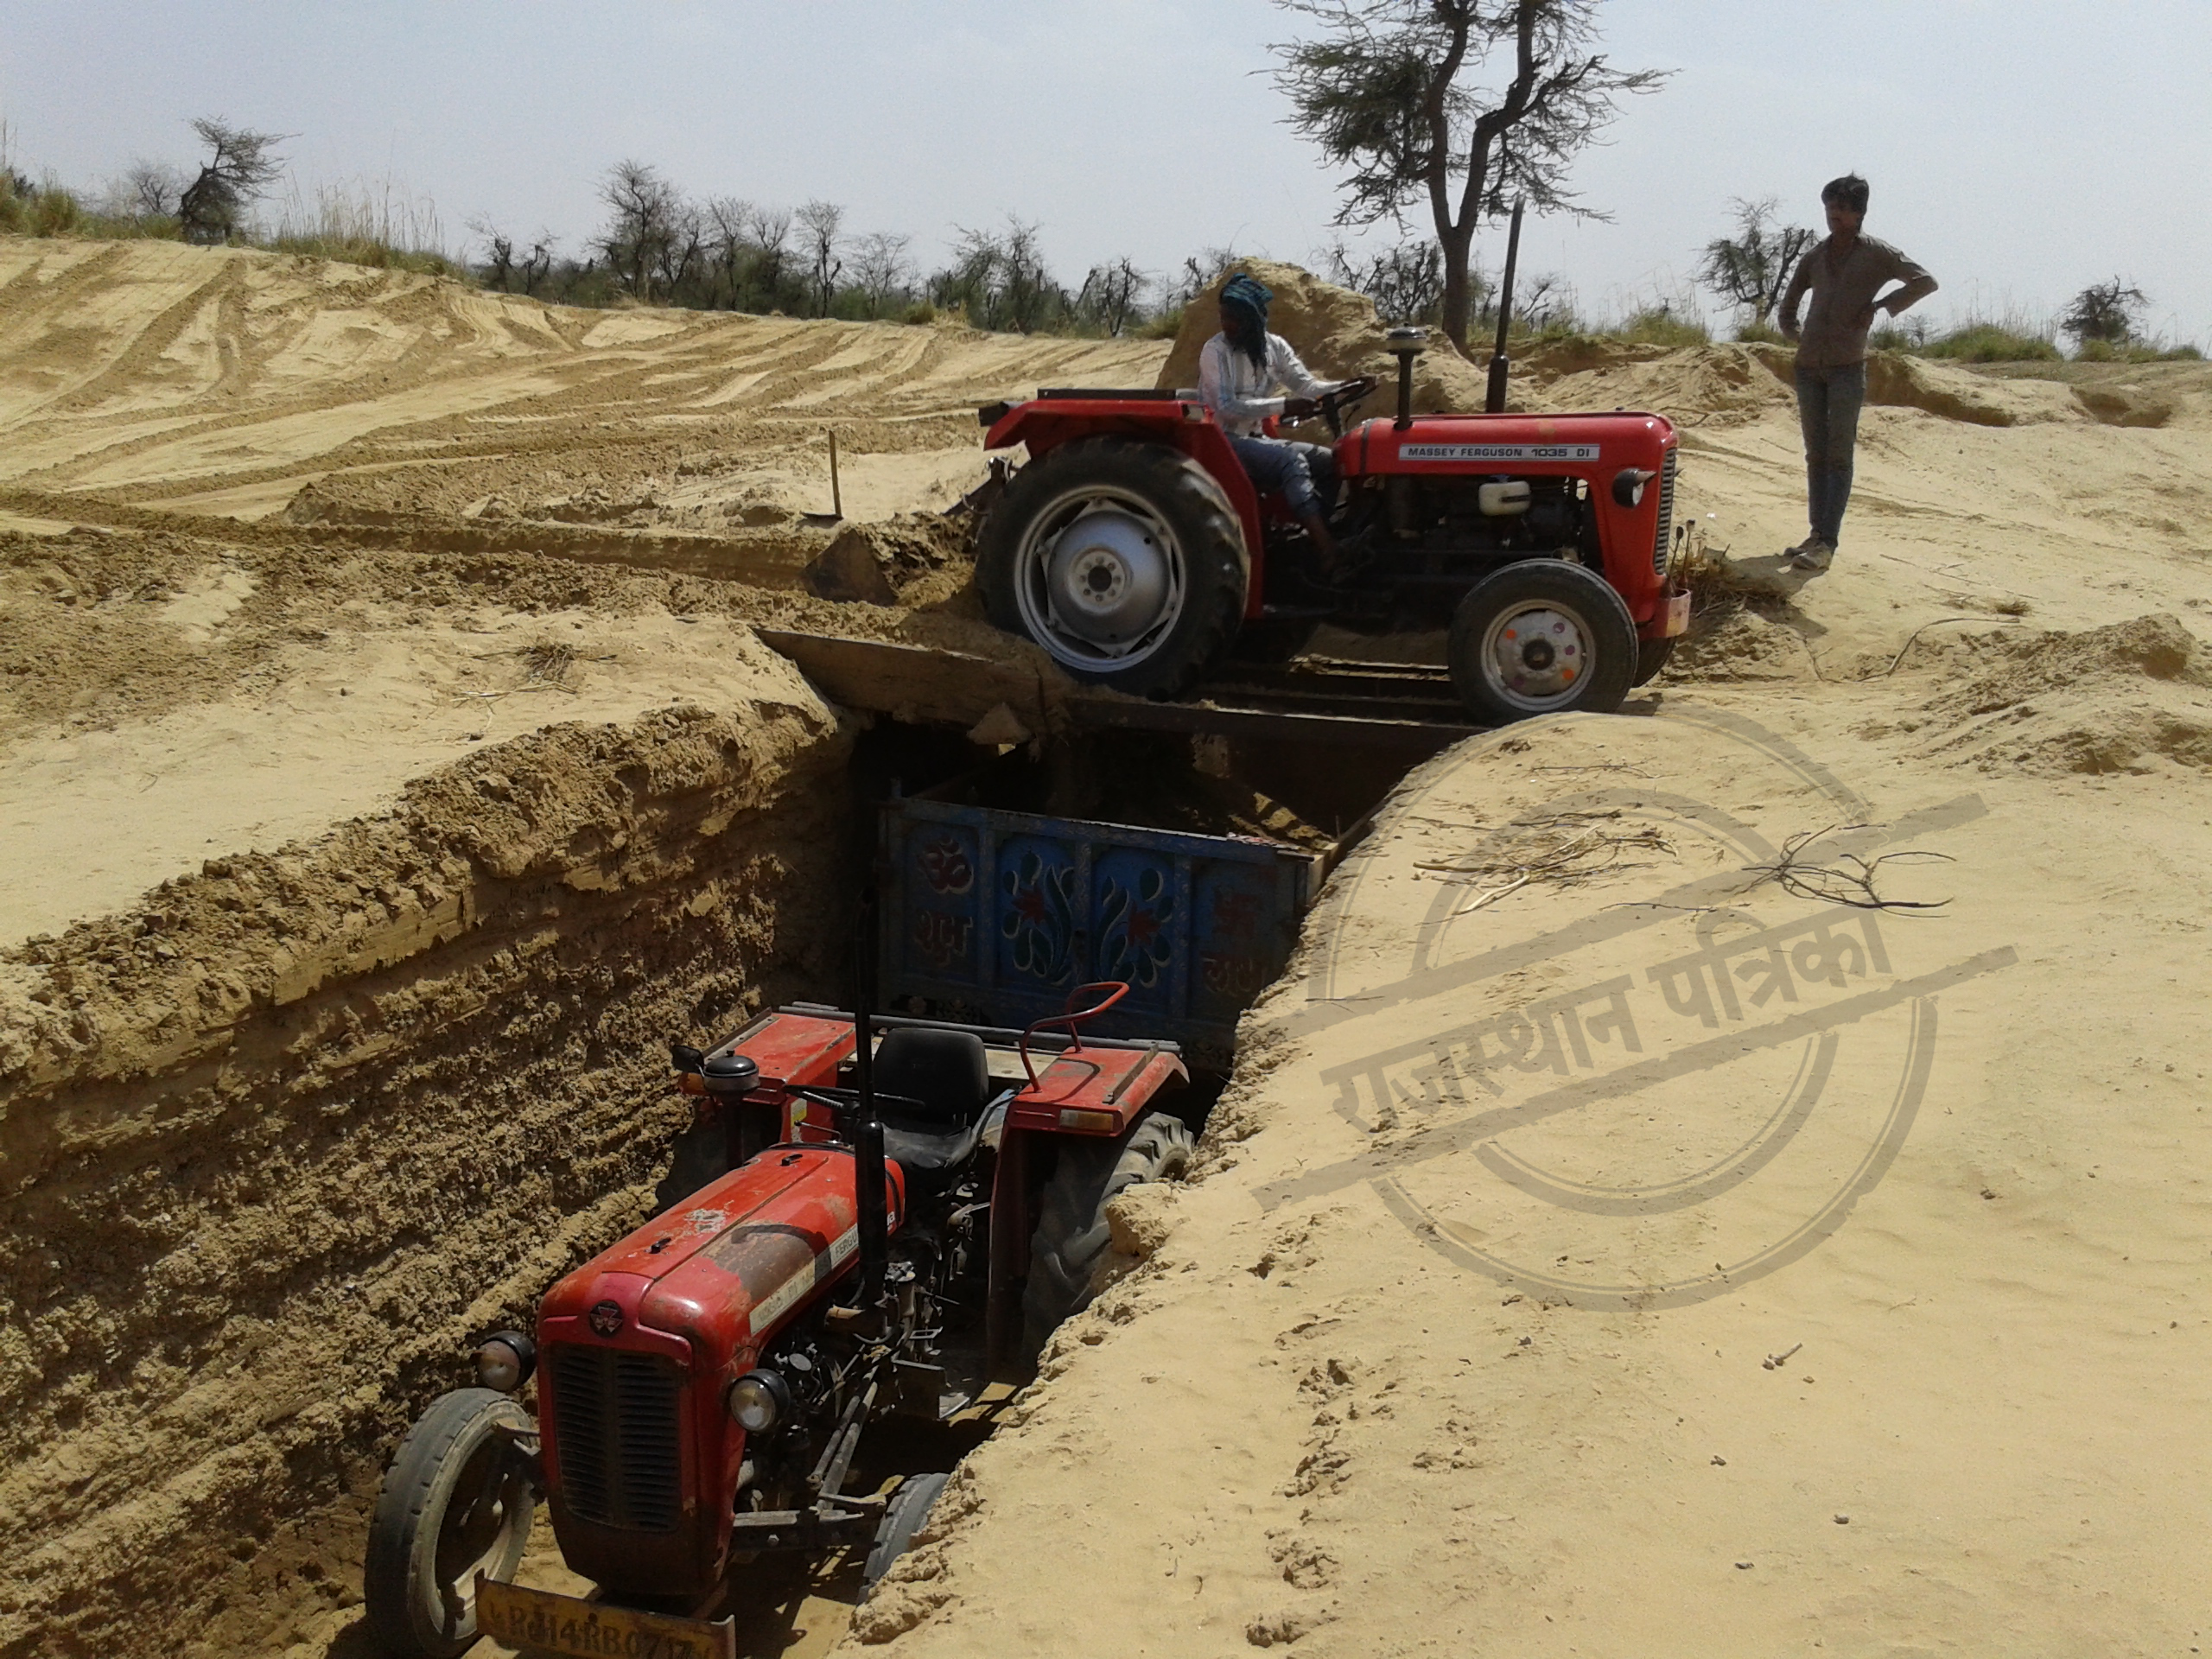 Illegal mining of gravel in bassi jaipur